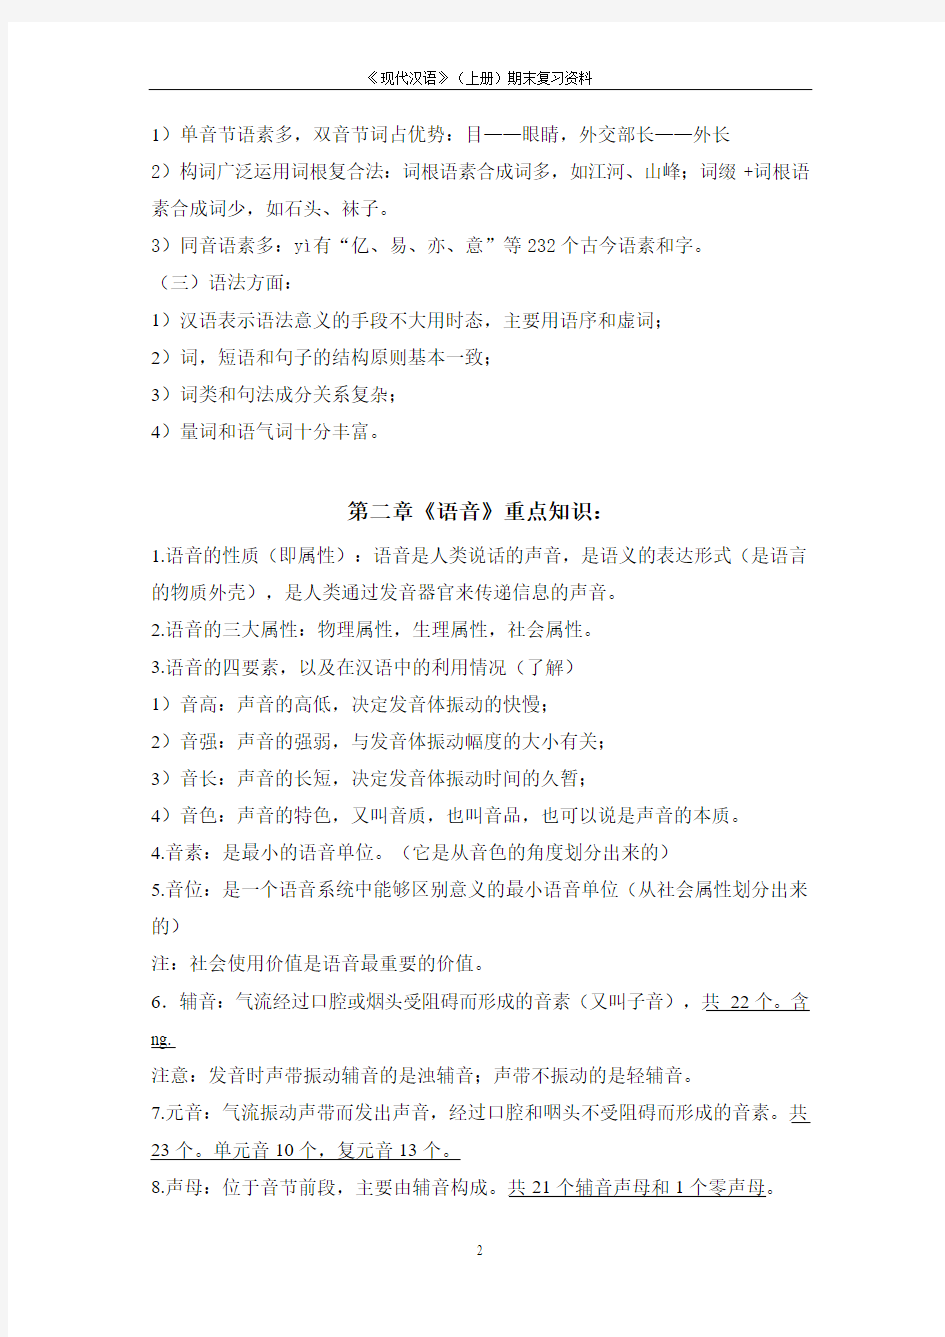 现代汉语复习资料